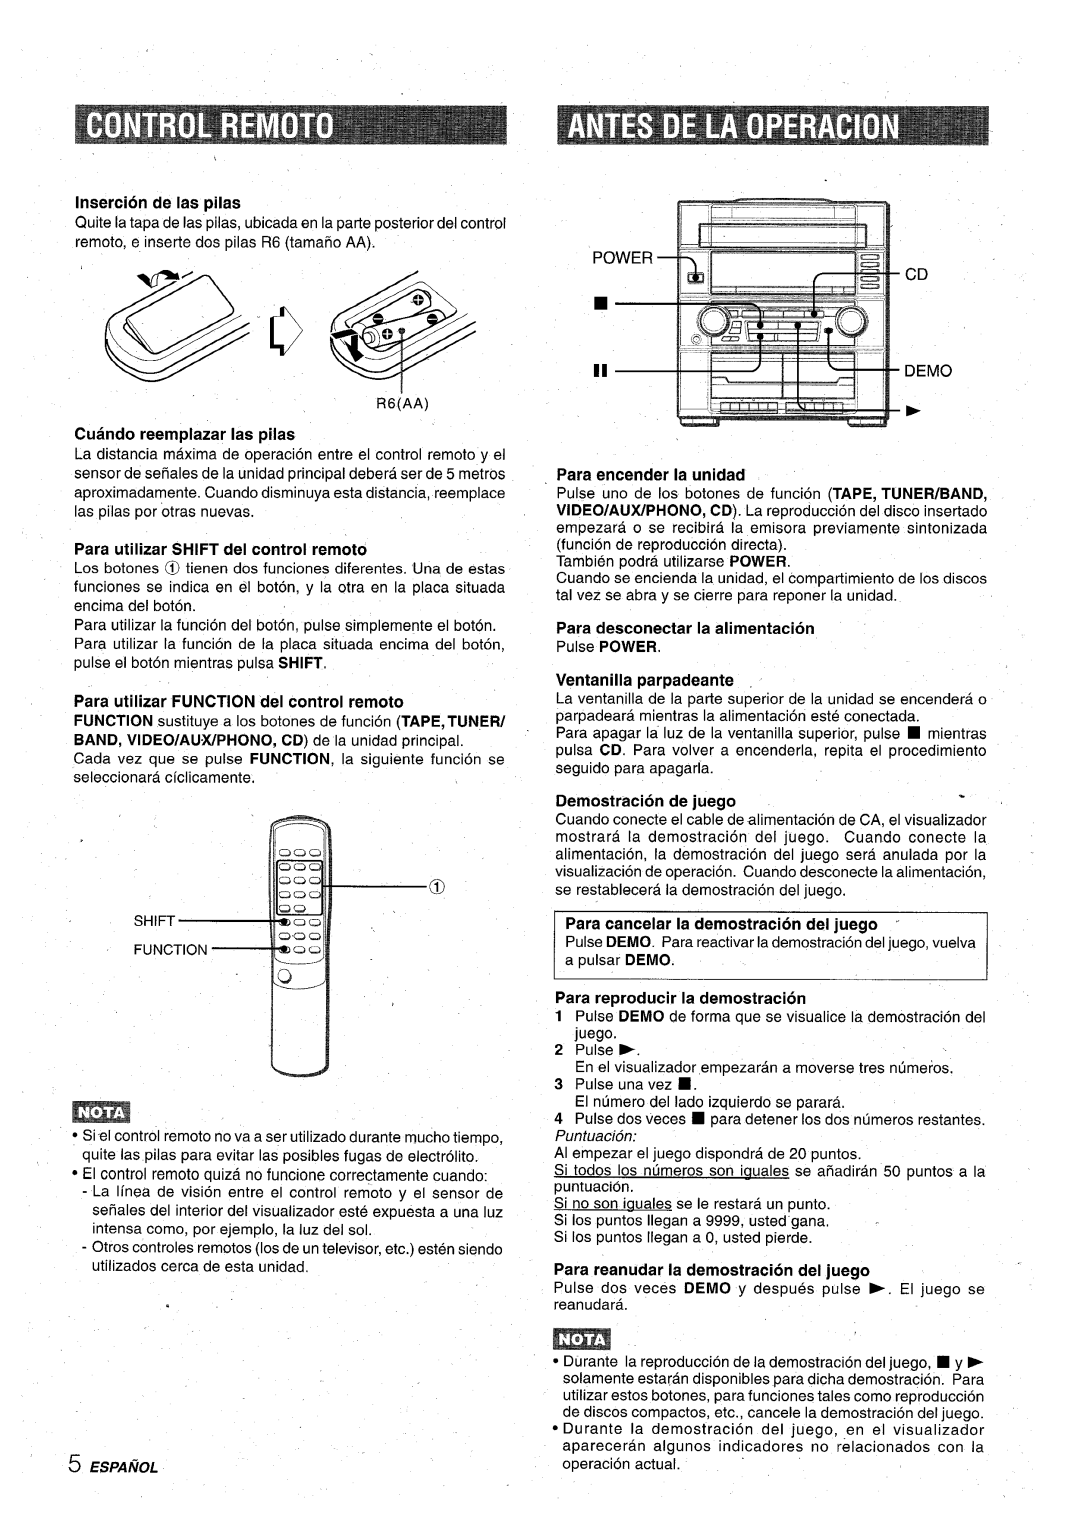 Aiwa XR-M75 manual ‘@-, @, Insertion de Ias pilas, Cuando reemplazar Ias pilas, Para utilizar SHIFT del control remoto 